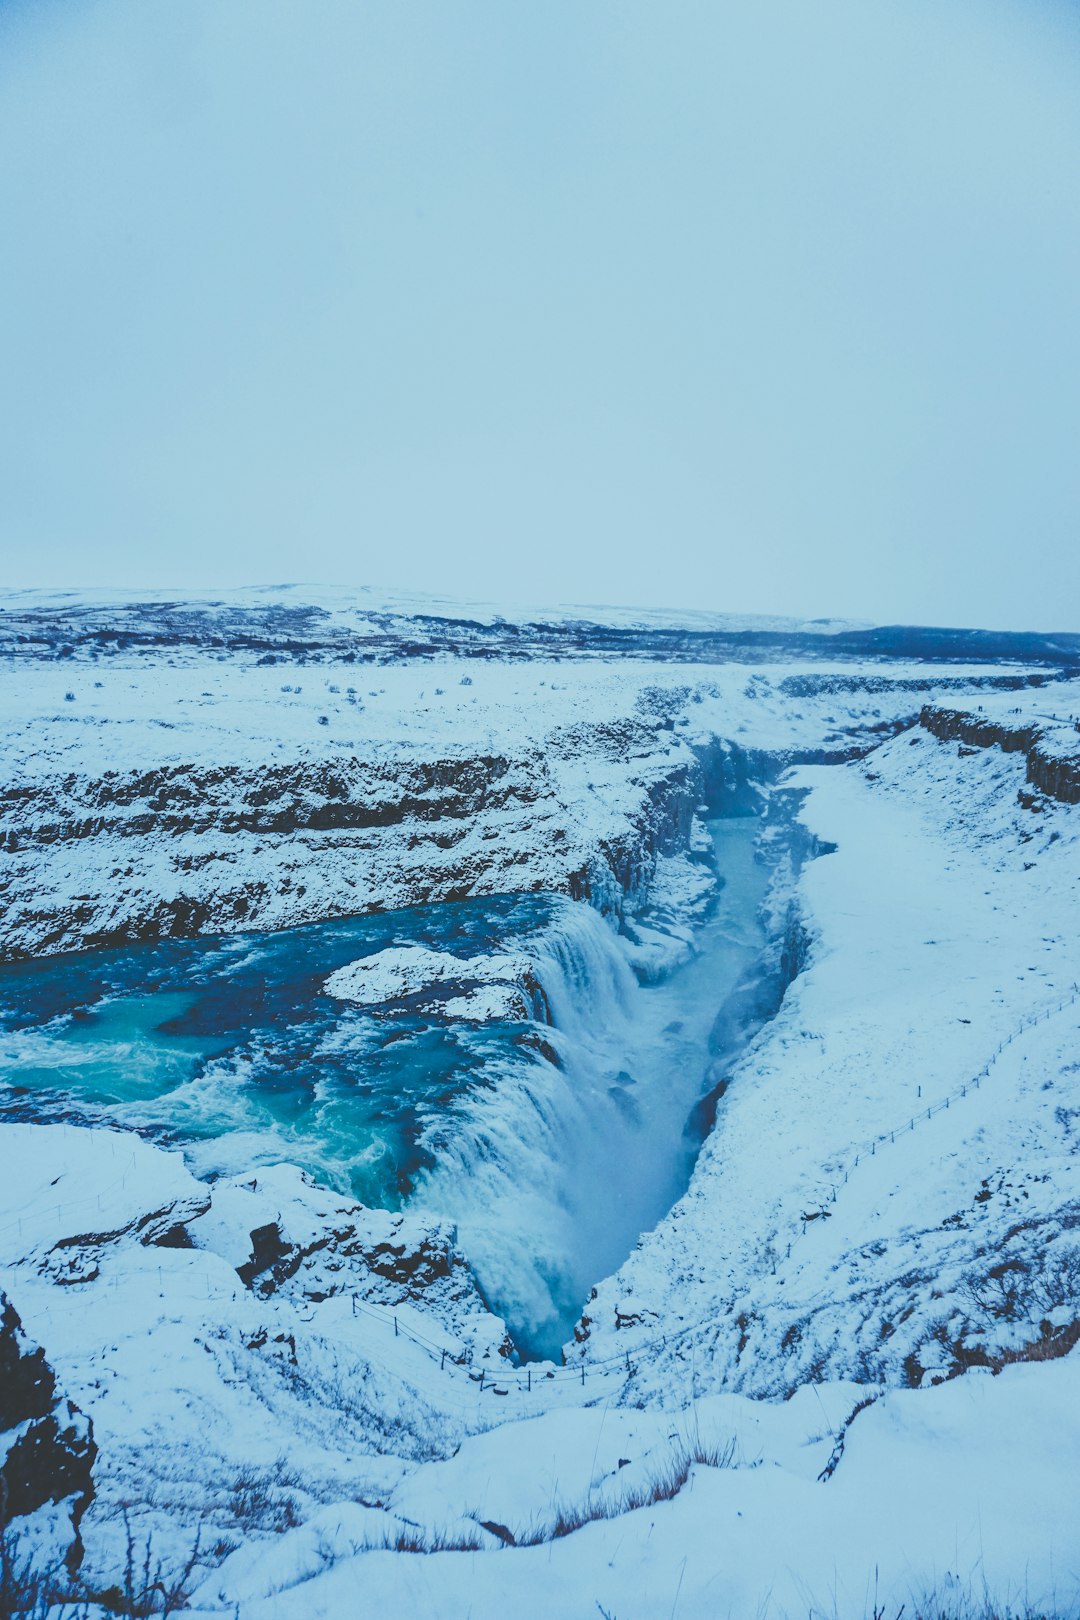 Glacial landform photo spot Gullfoss Mýrdalsjökull